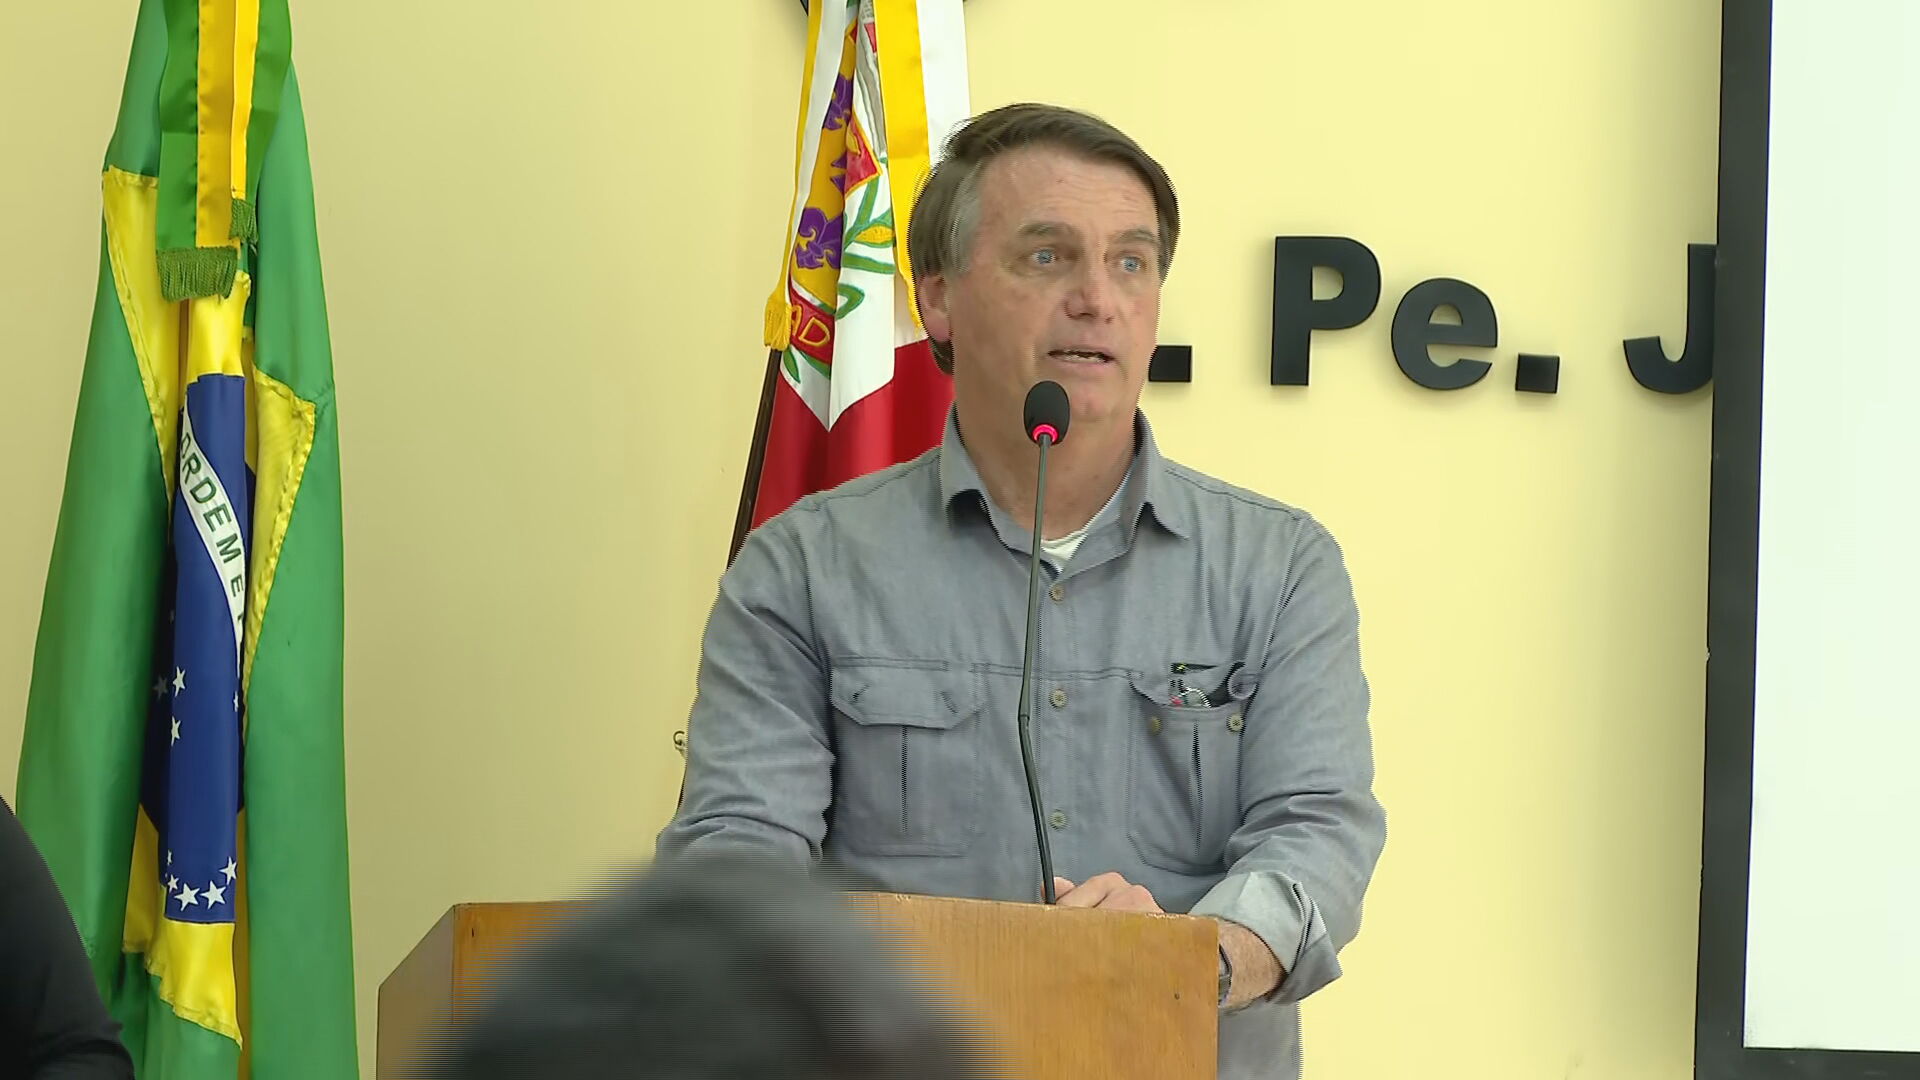 MP Eleitoral se manifesta favorável à inelegibilidade de Bolsonaro